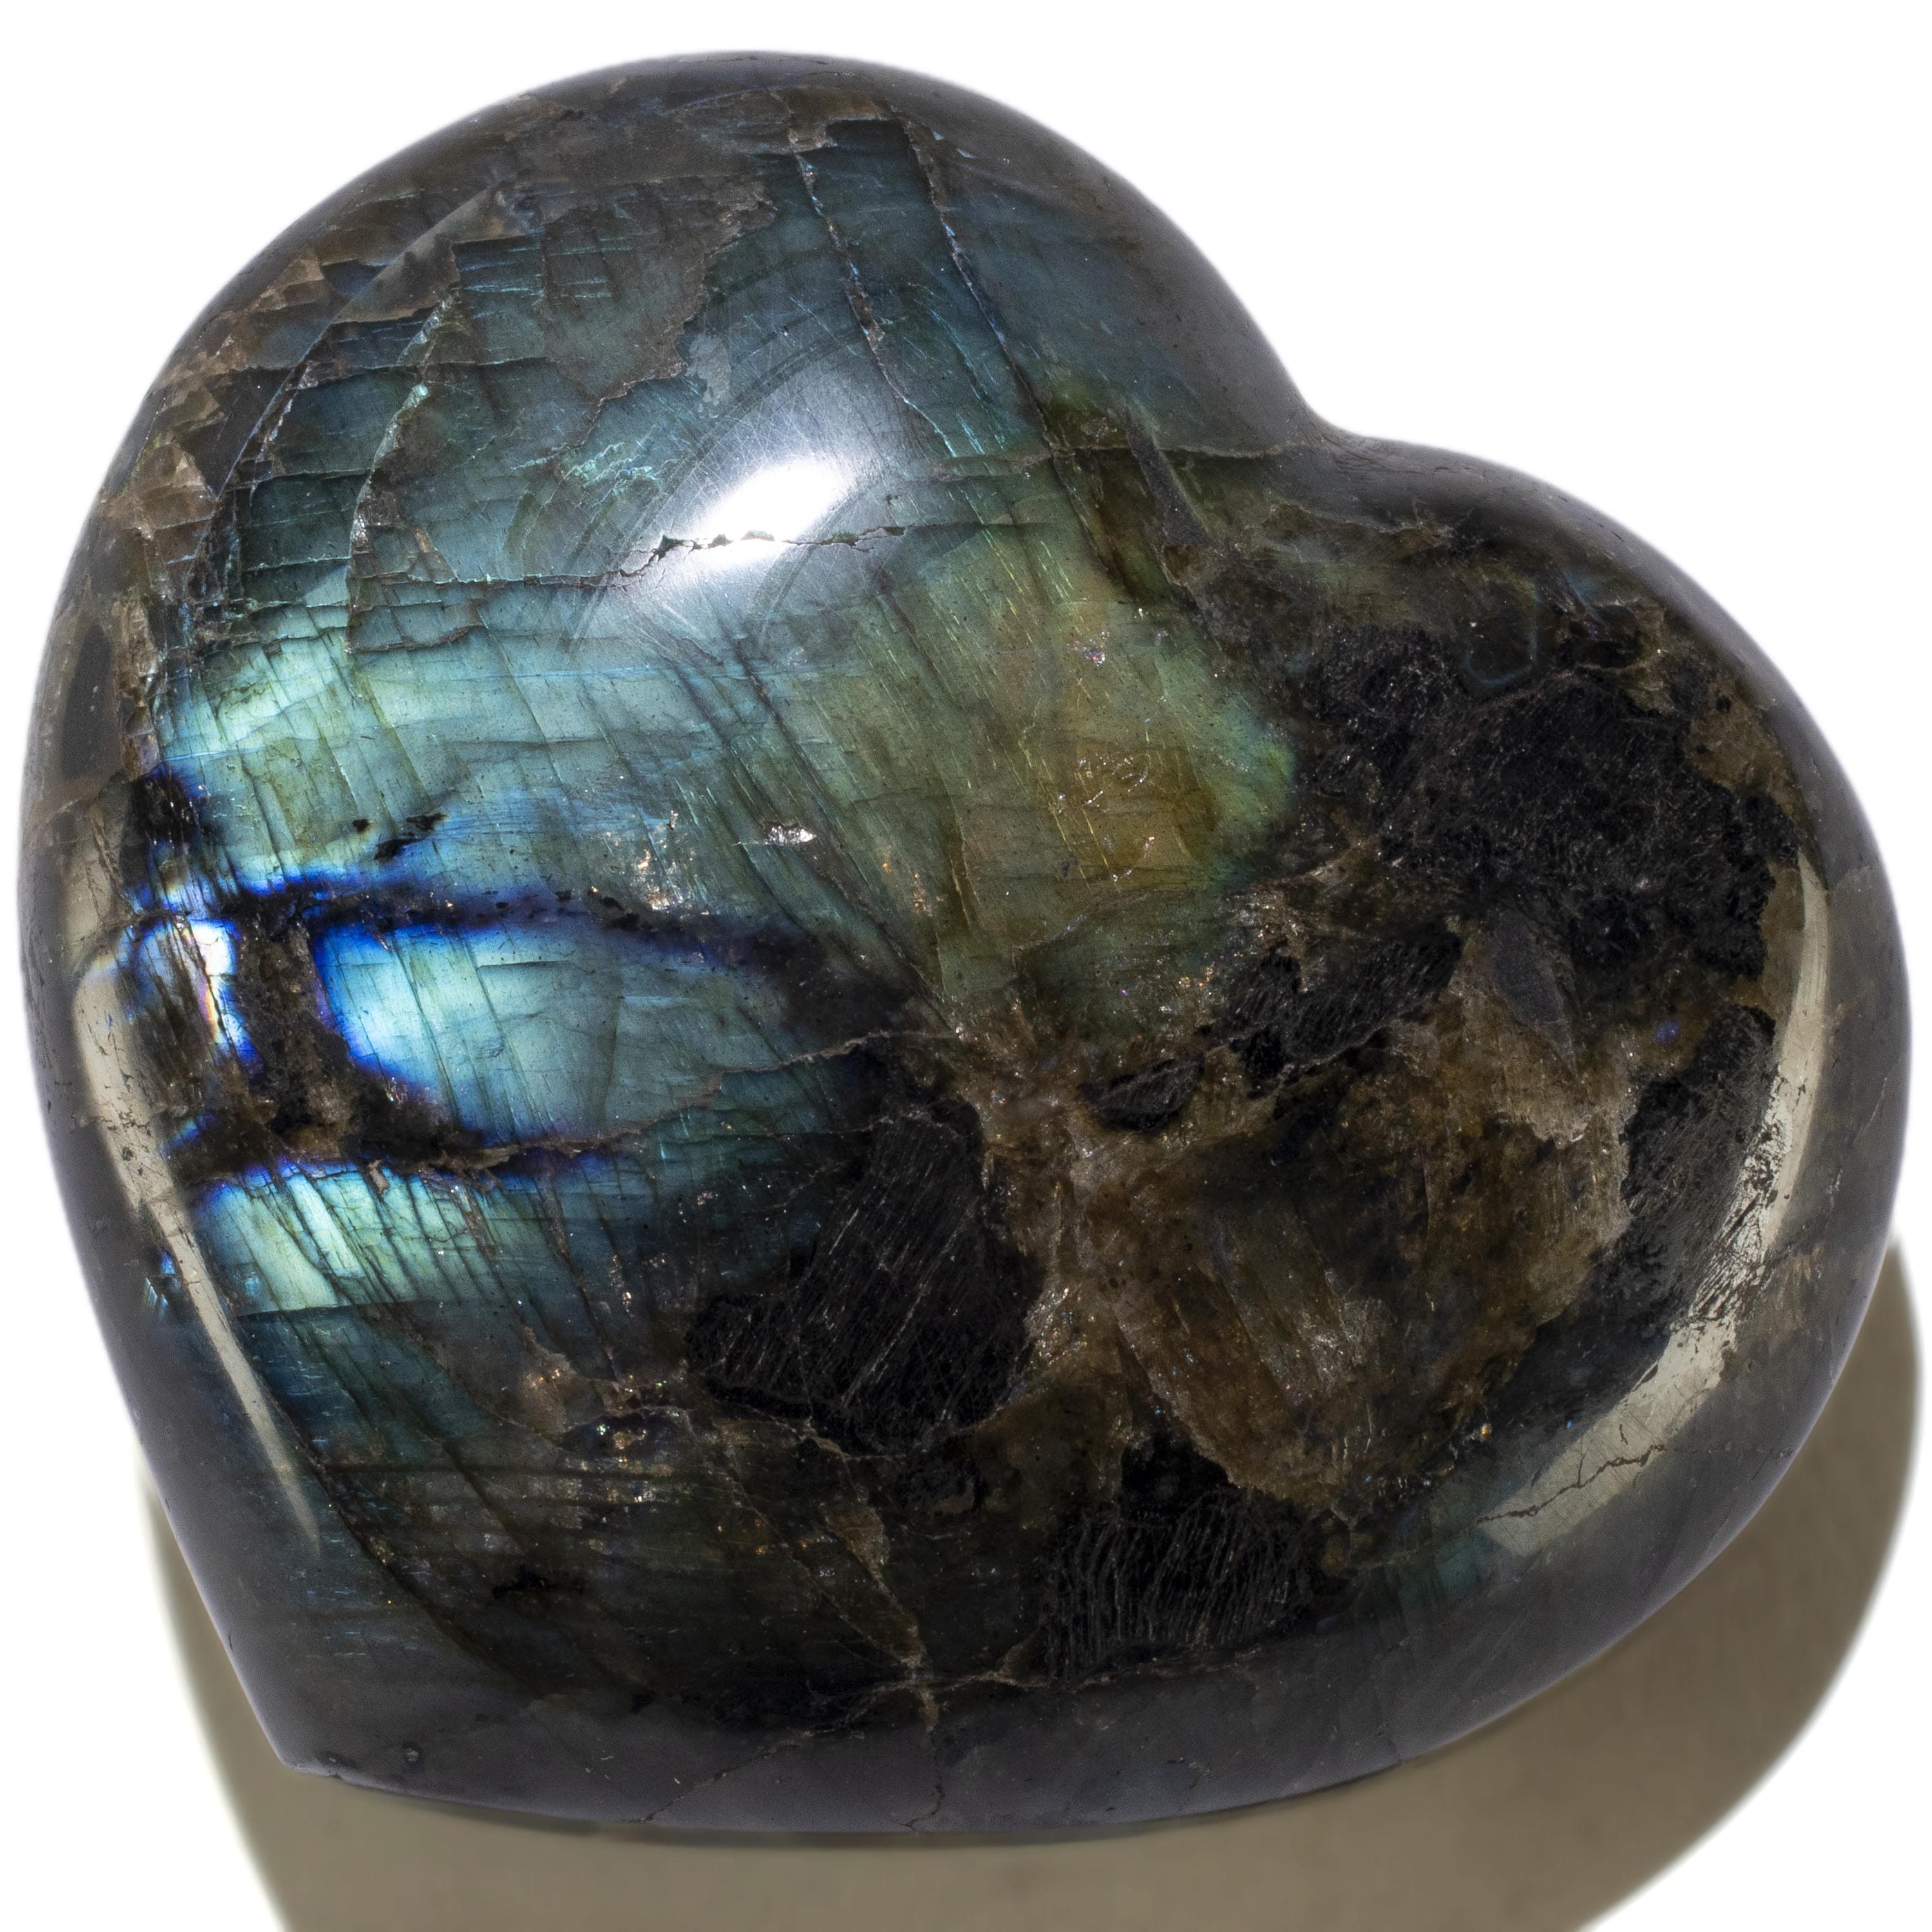 KALIFANO Labradorite Labradorite Gemstone Heart Carving 650g / 4.5in. GH600-LB